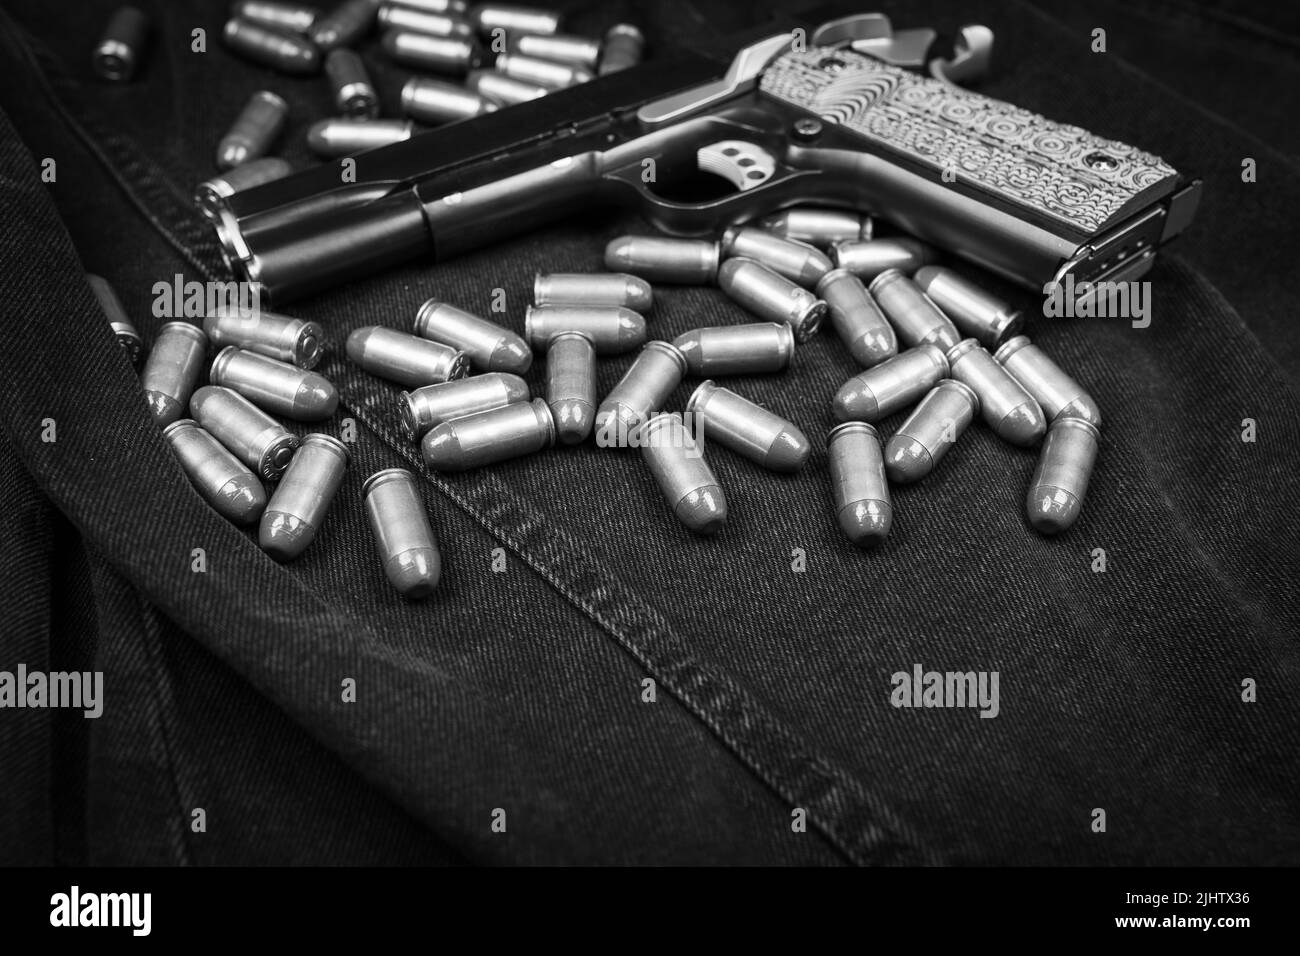 Pistolet modèle 1911 et cartouches (.45 ACP) sur fond noir denim, photo monochrome Banque D'Images